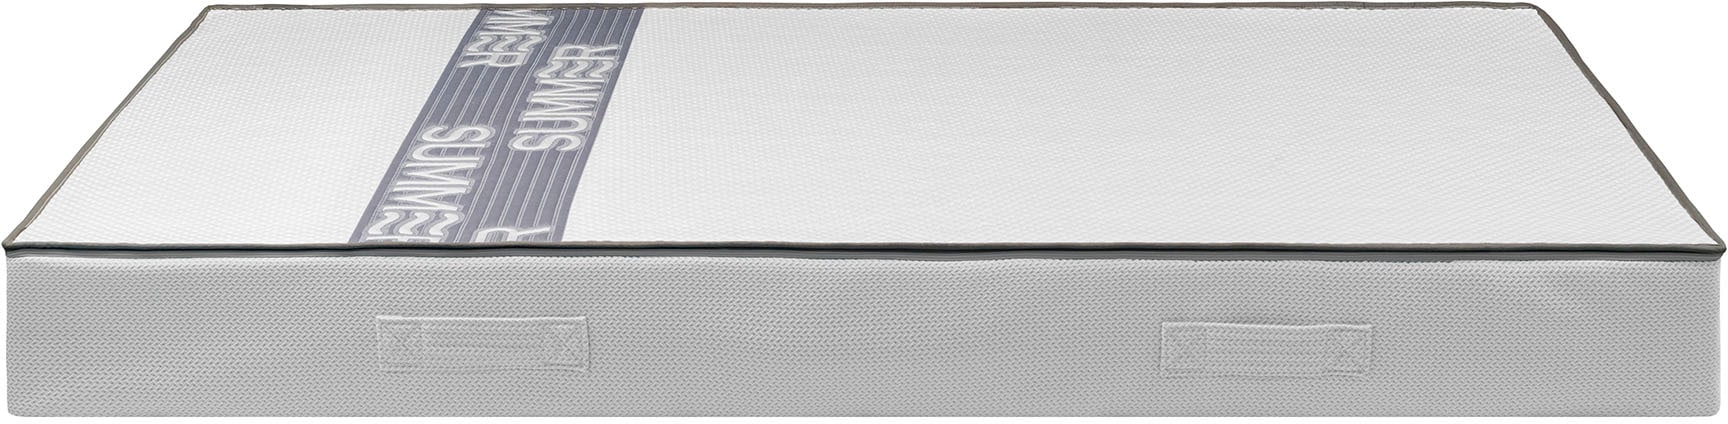 Breckle Northeim Taschenfederkernmatratze »Smartsleep 6000«, 23 cm hoch, (1 St.), Matratze in 90x200 cm und weiteren Grössen, Federkernmatratze